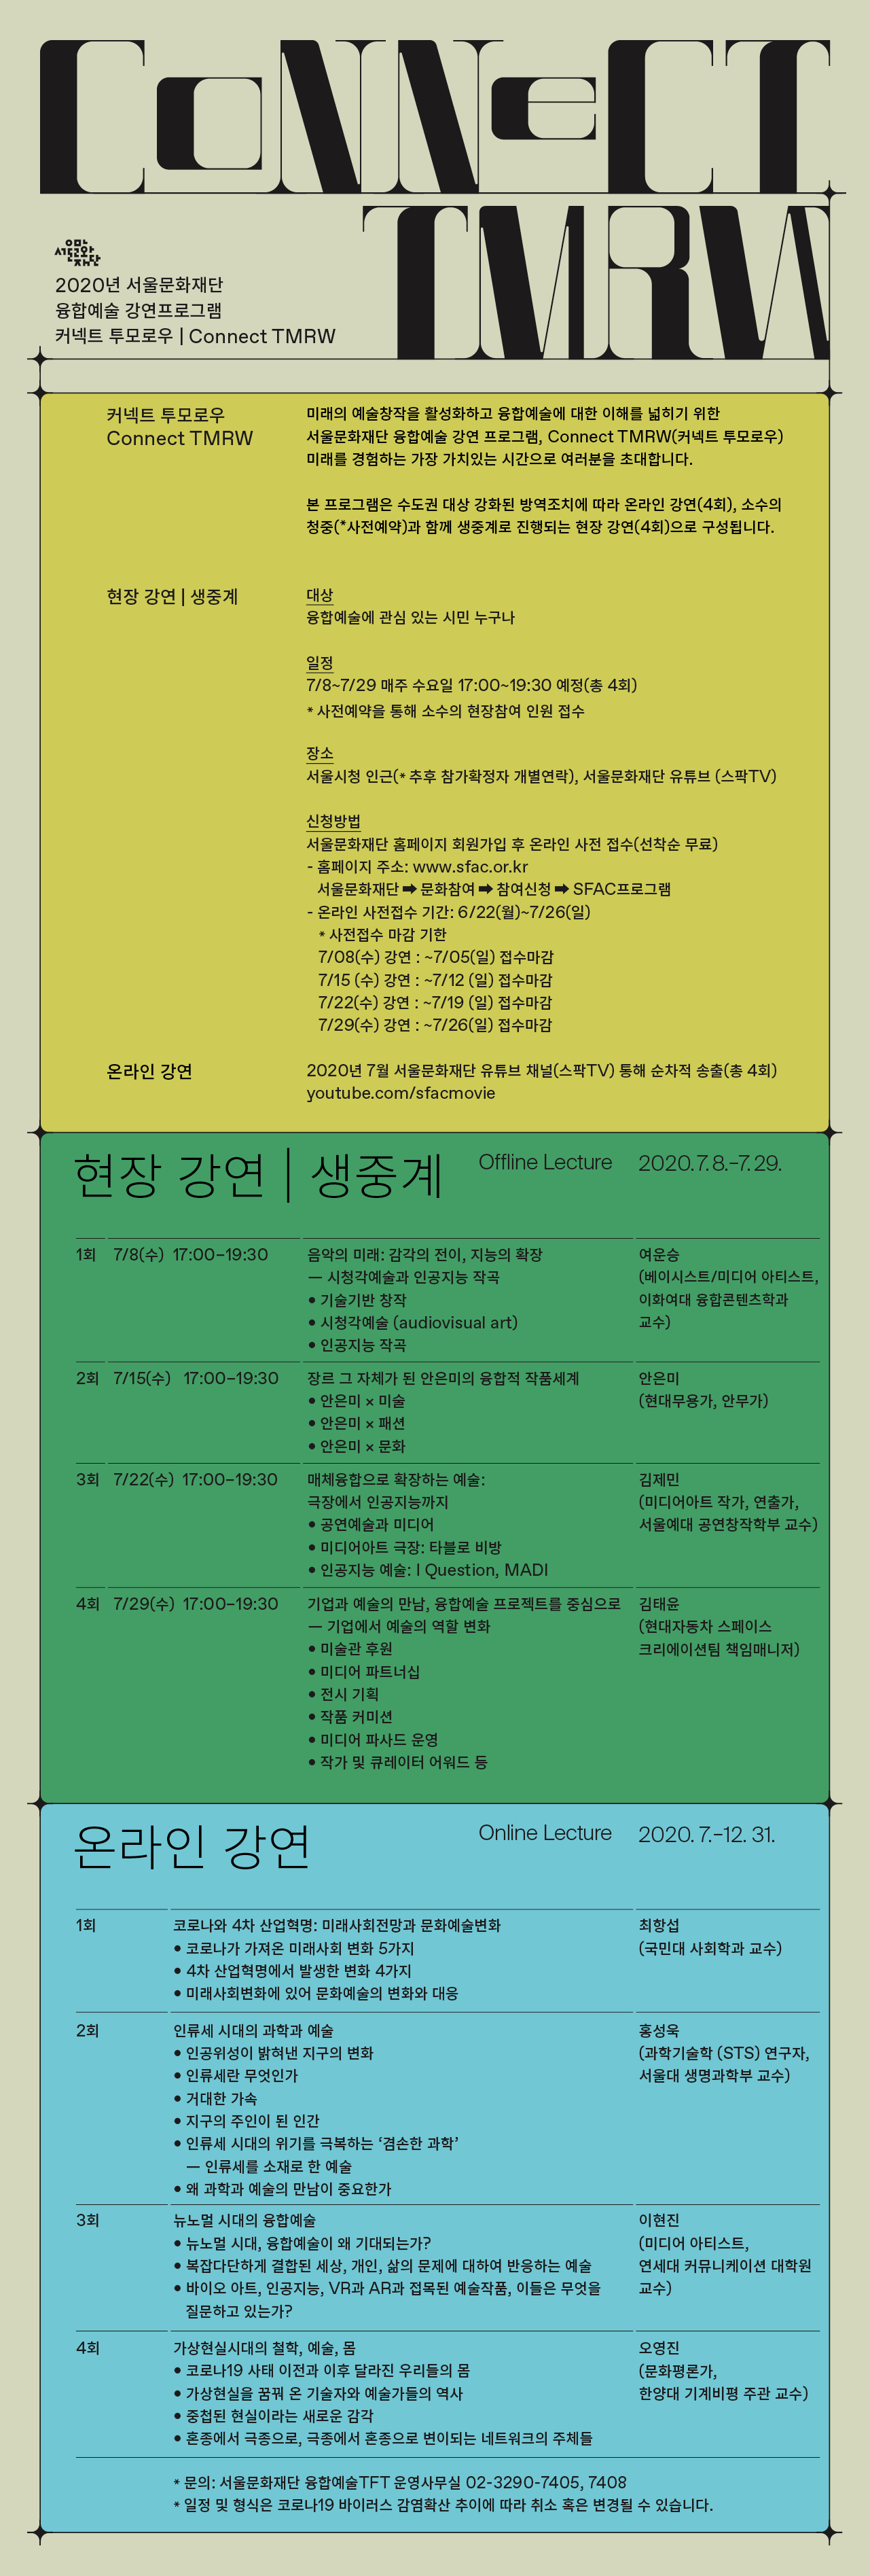 2020년 서울문화재단 융합예술 강연프로그램, 커넥트 투모로우의 강연 상세 정보